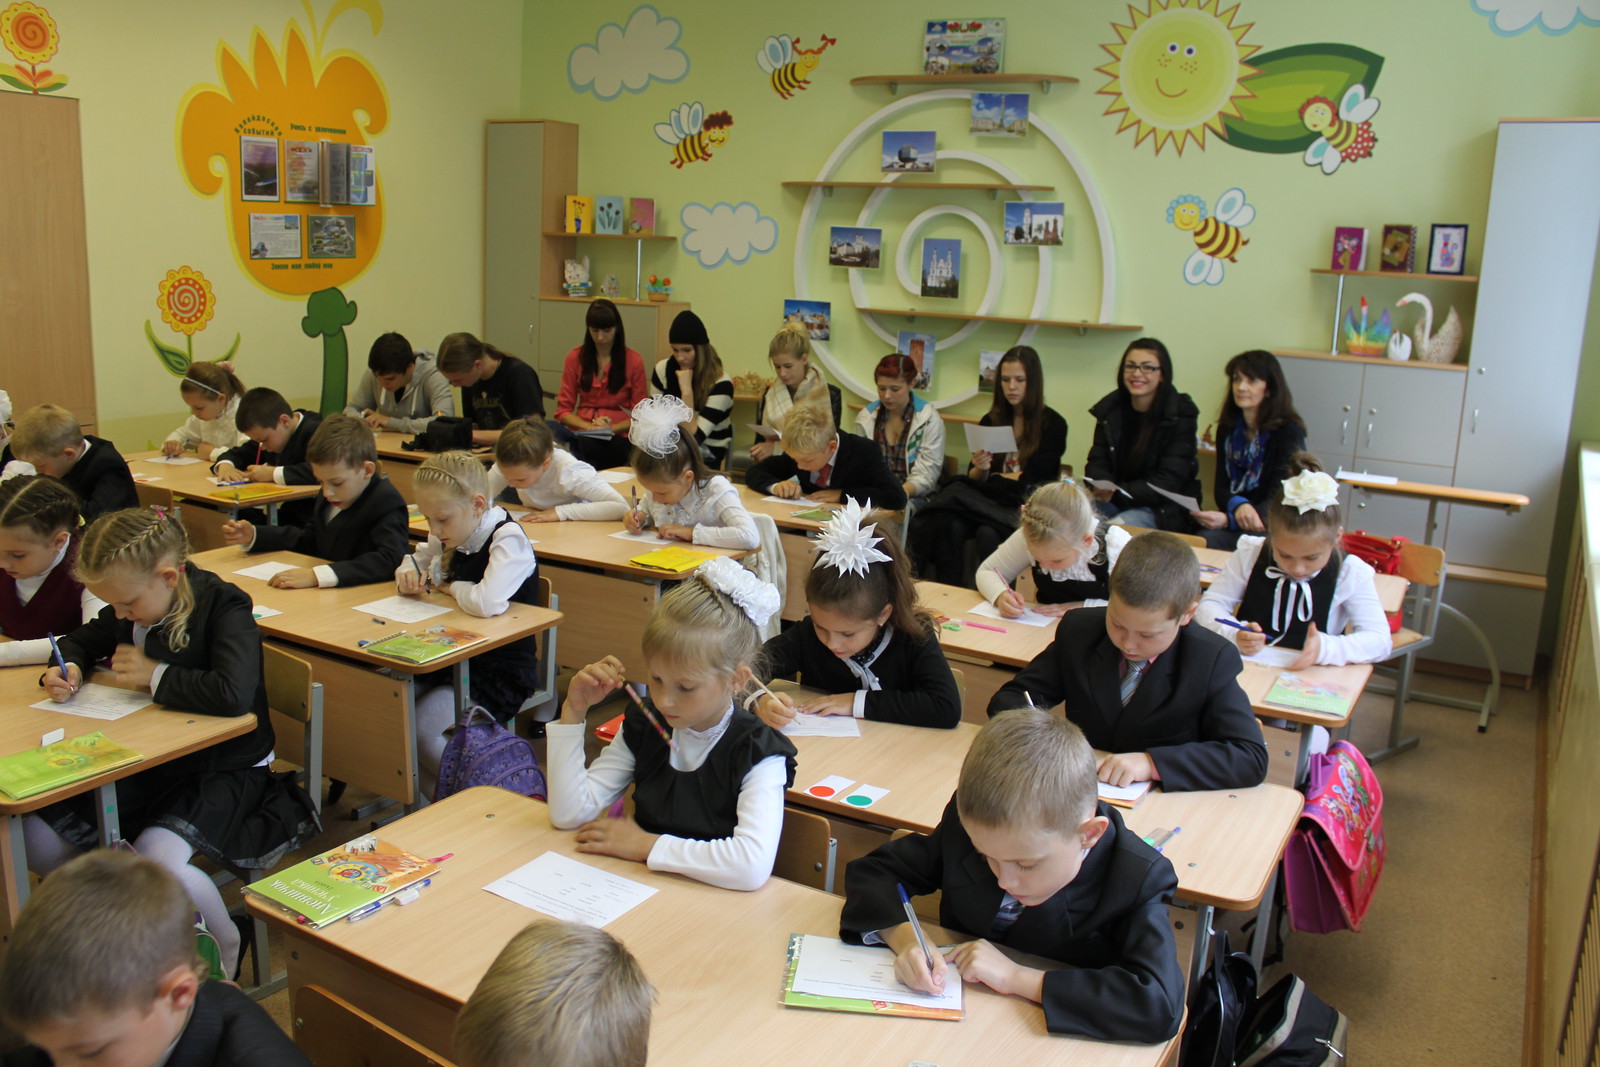 2013-05-27 Schüleraustausch 070 Witebsk